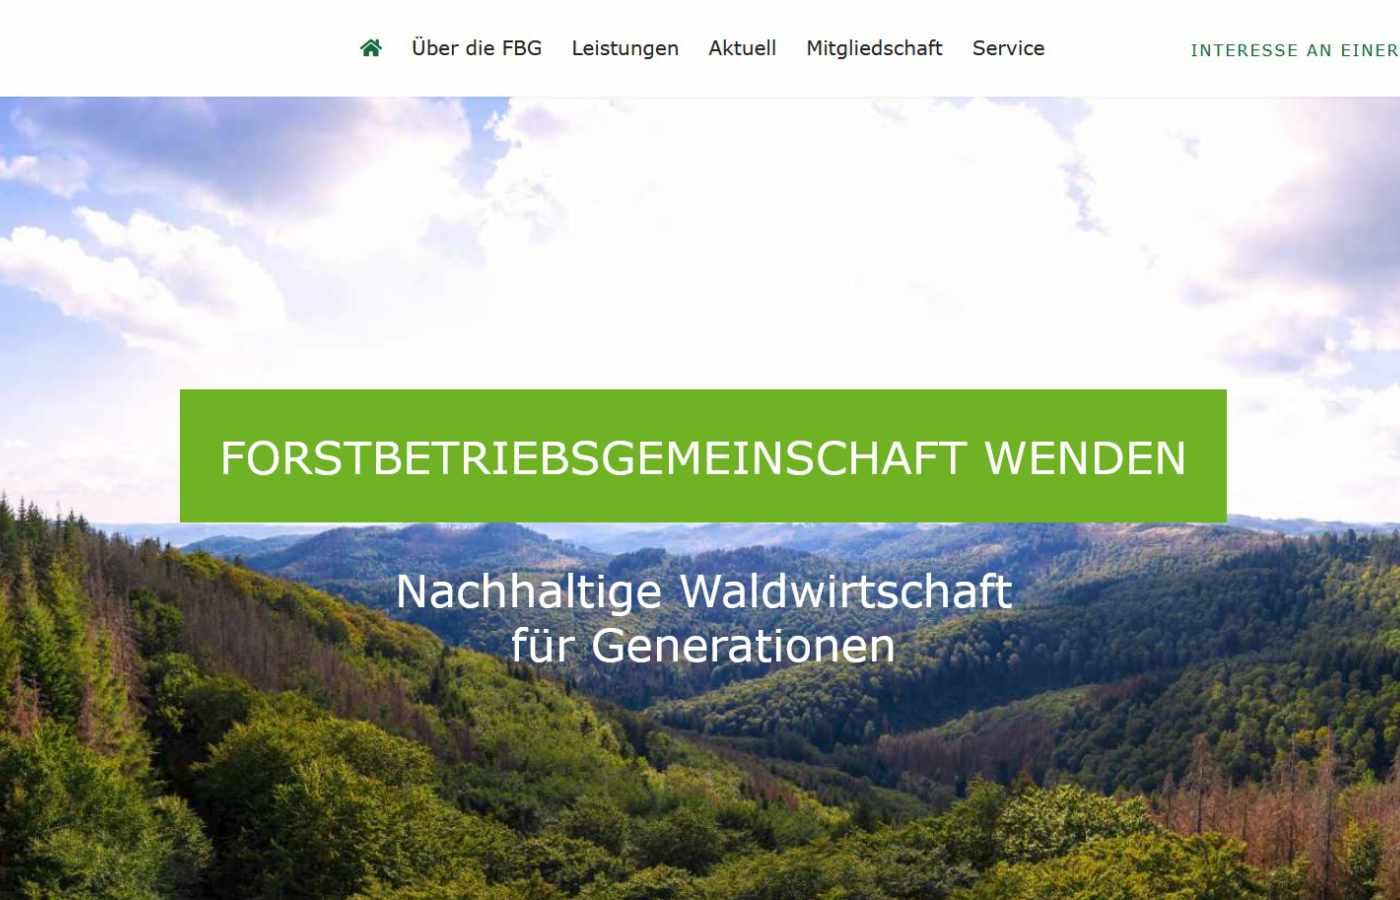 Startseite der Forstbetriebsgemeinschaft Wenden